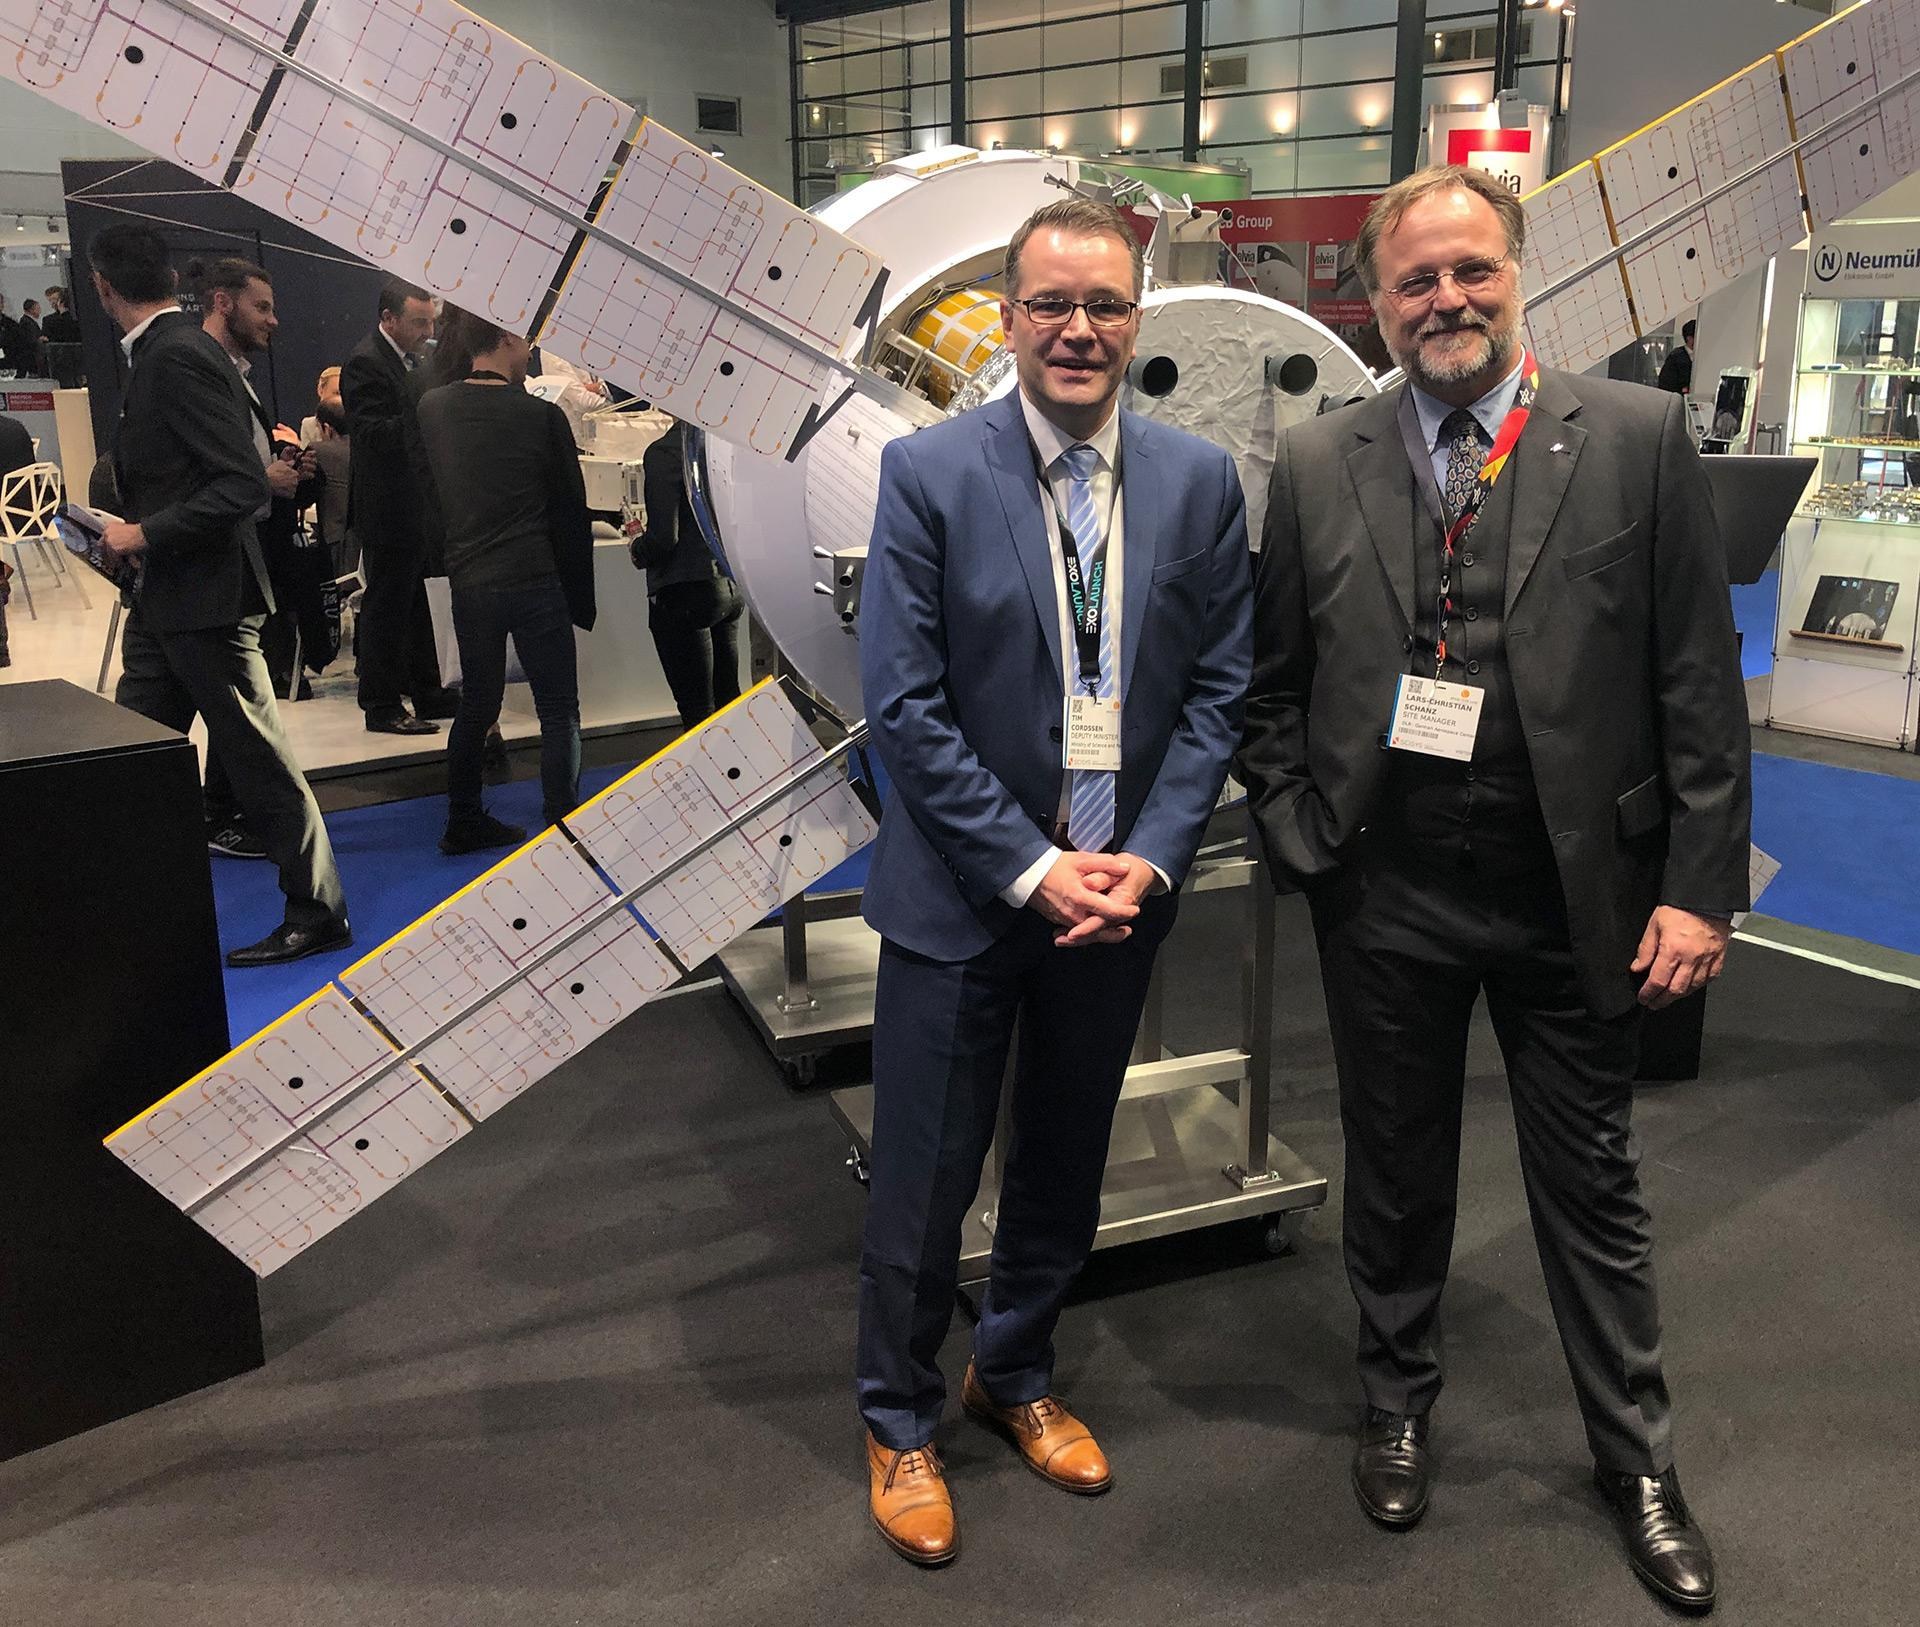 Tim Cordßen, Staatsrat bei der Bremer Senatorin für Wissenschaft und Häfen, besucht den DLR-Stand auf der SpaceTech Expo 2019